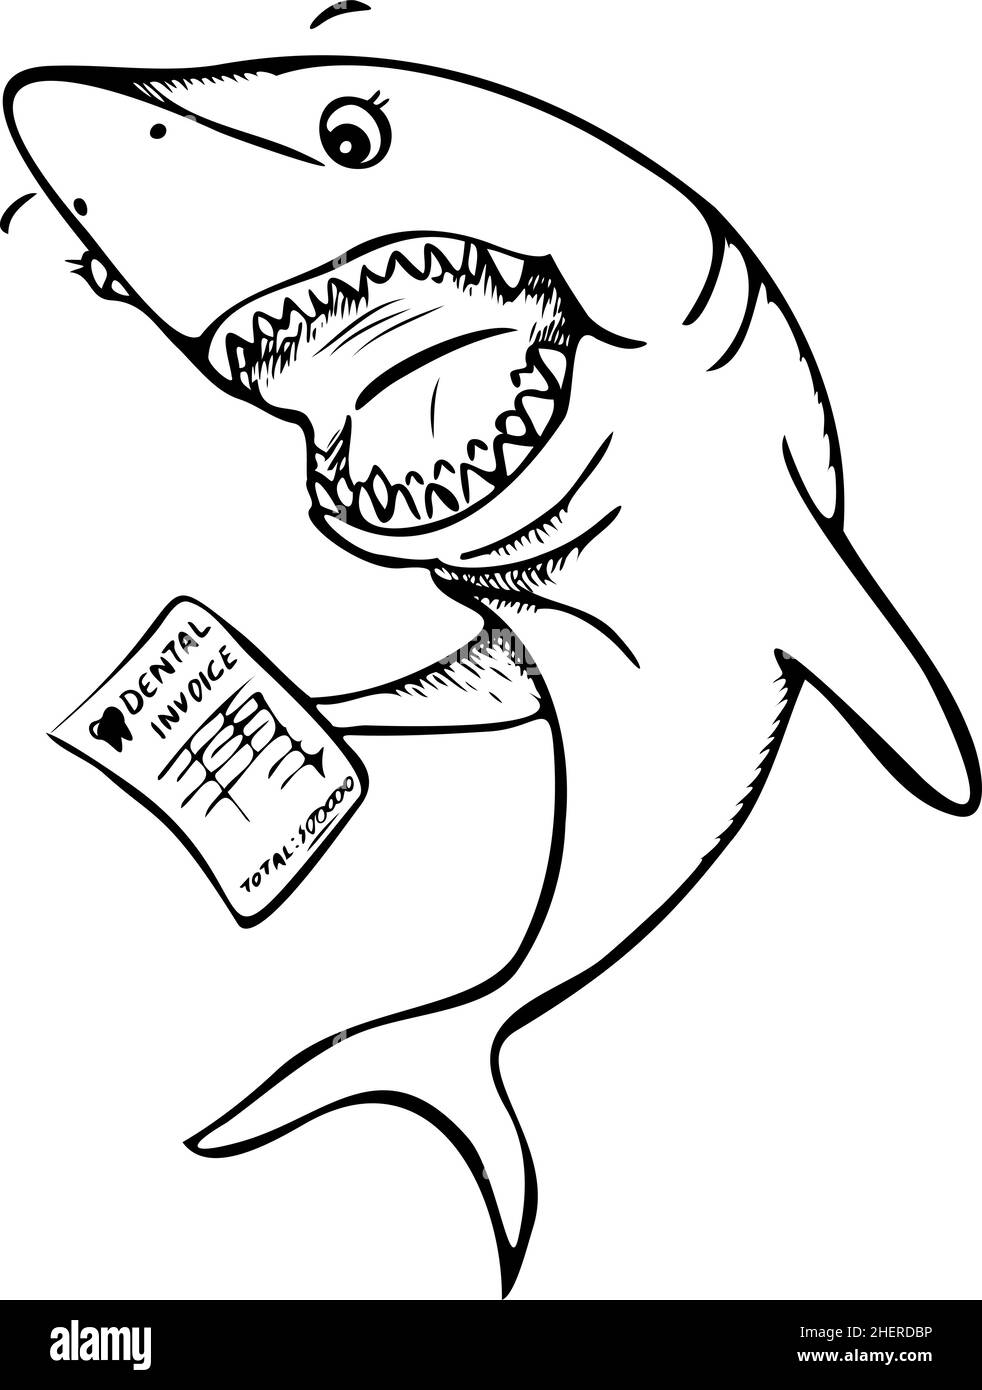 Vektor-Illustration von lustigen Hai mit Zahnrechnung in der Flosse. Staunend schwarz-weiß Cartoon Hai. Stock Vektor